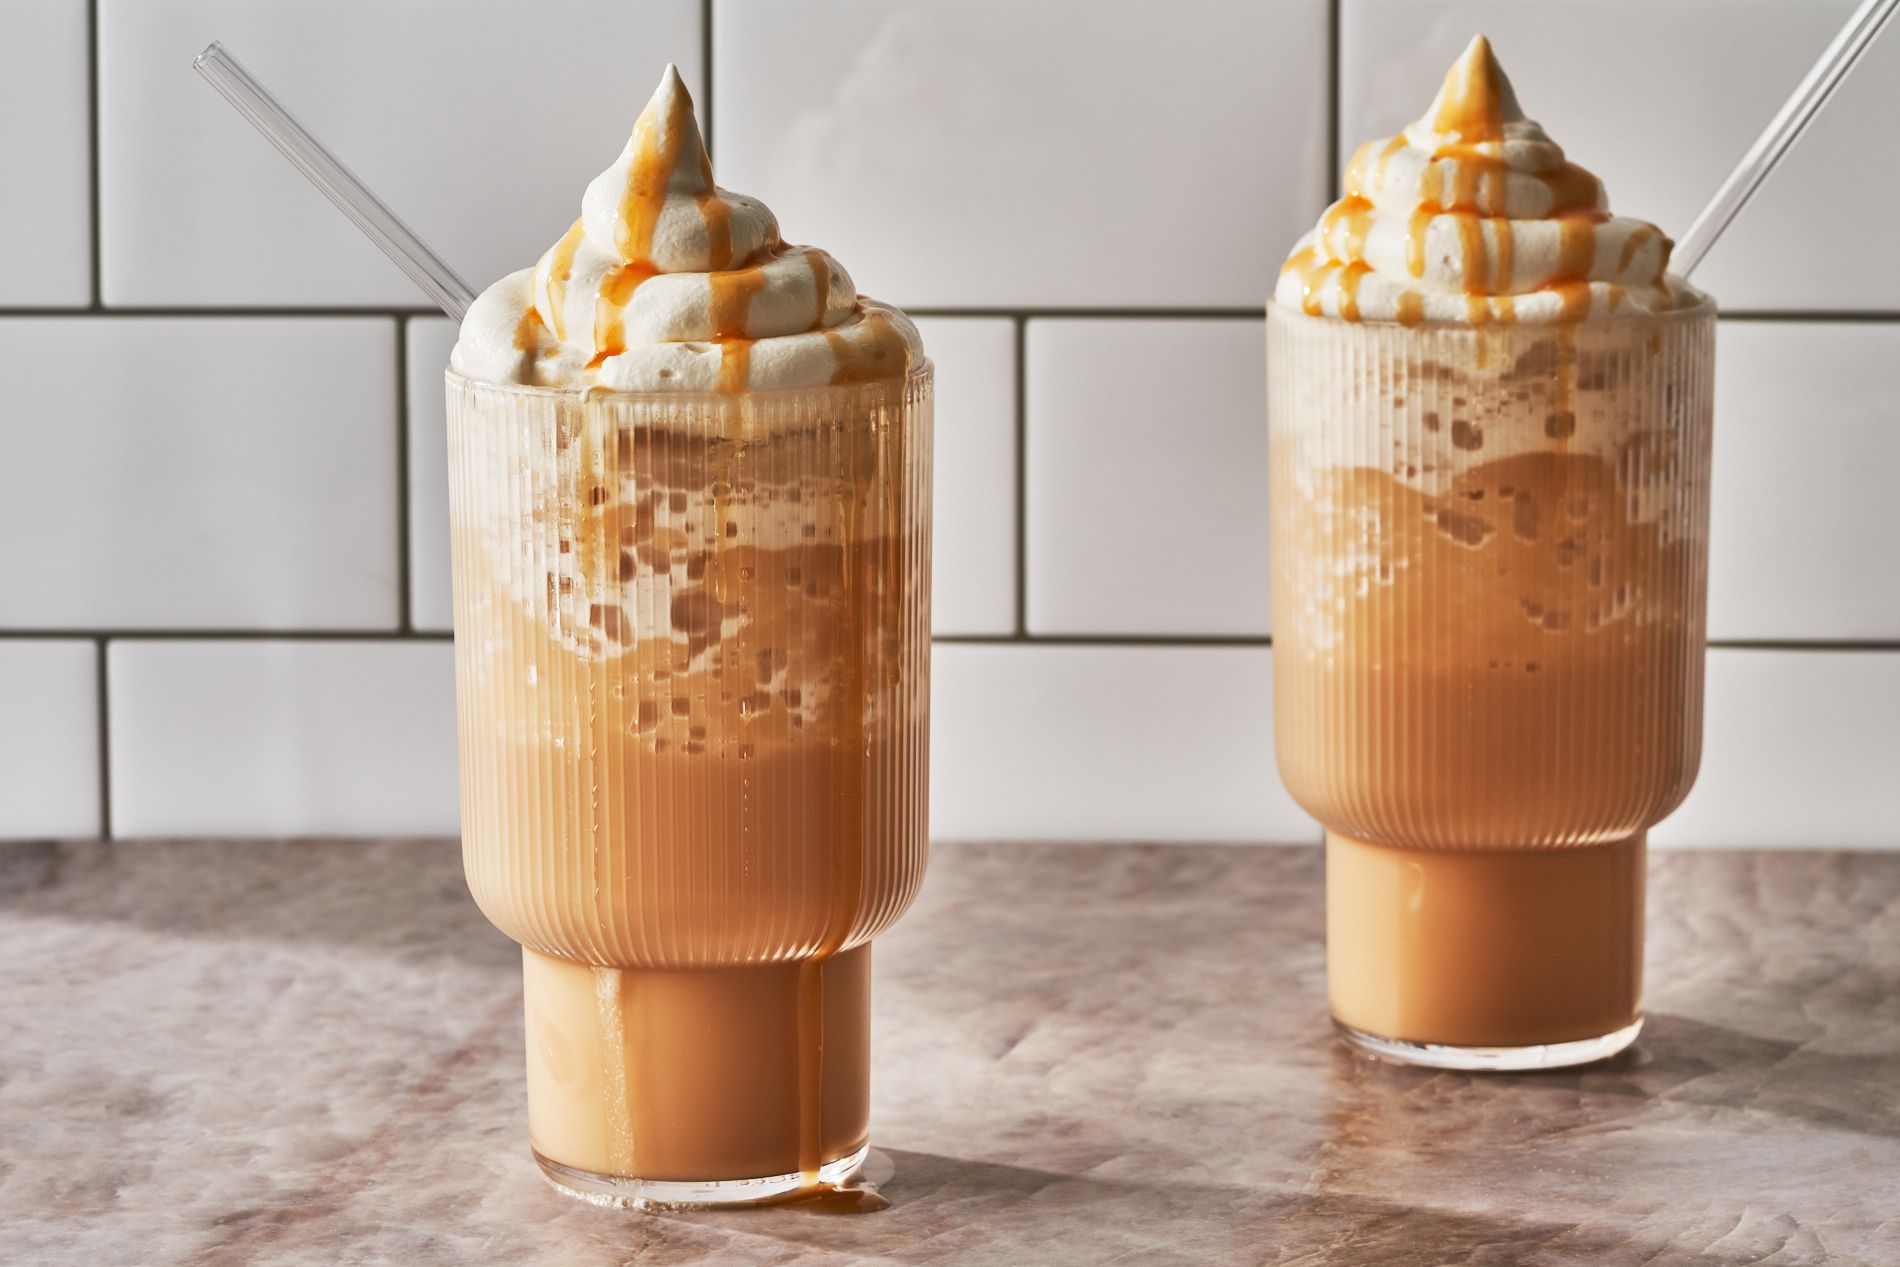 Verdwijnen grafisch Reis Zelf frappuccino maken - dit zijn makkelijke ijskoffie recepten